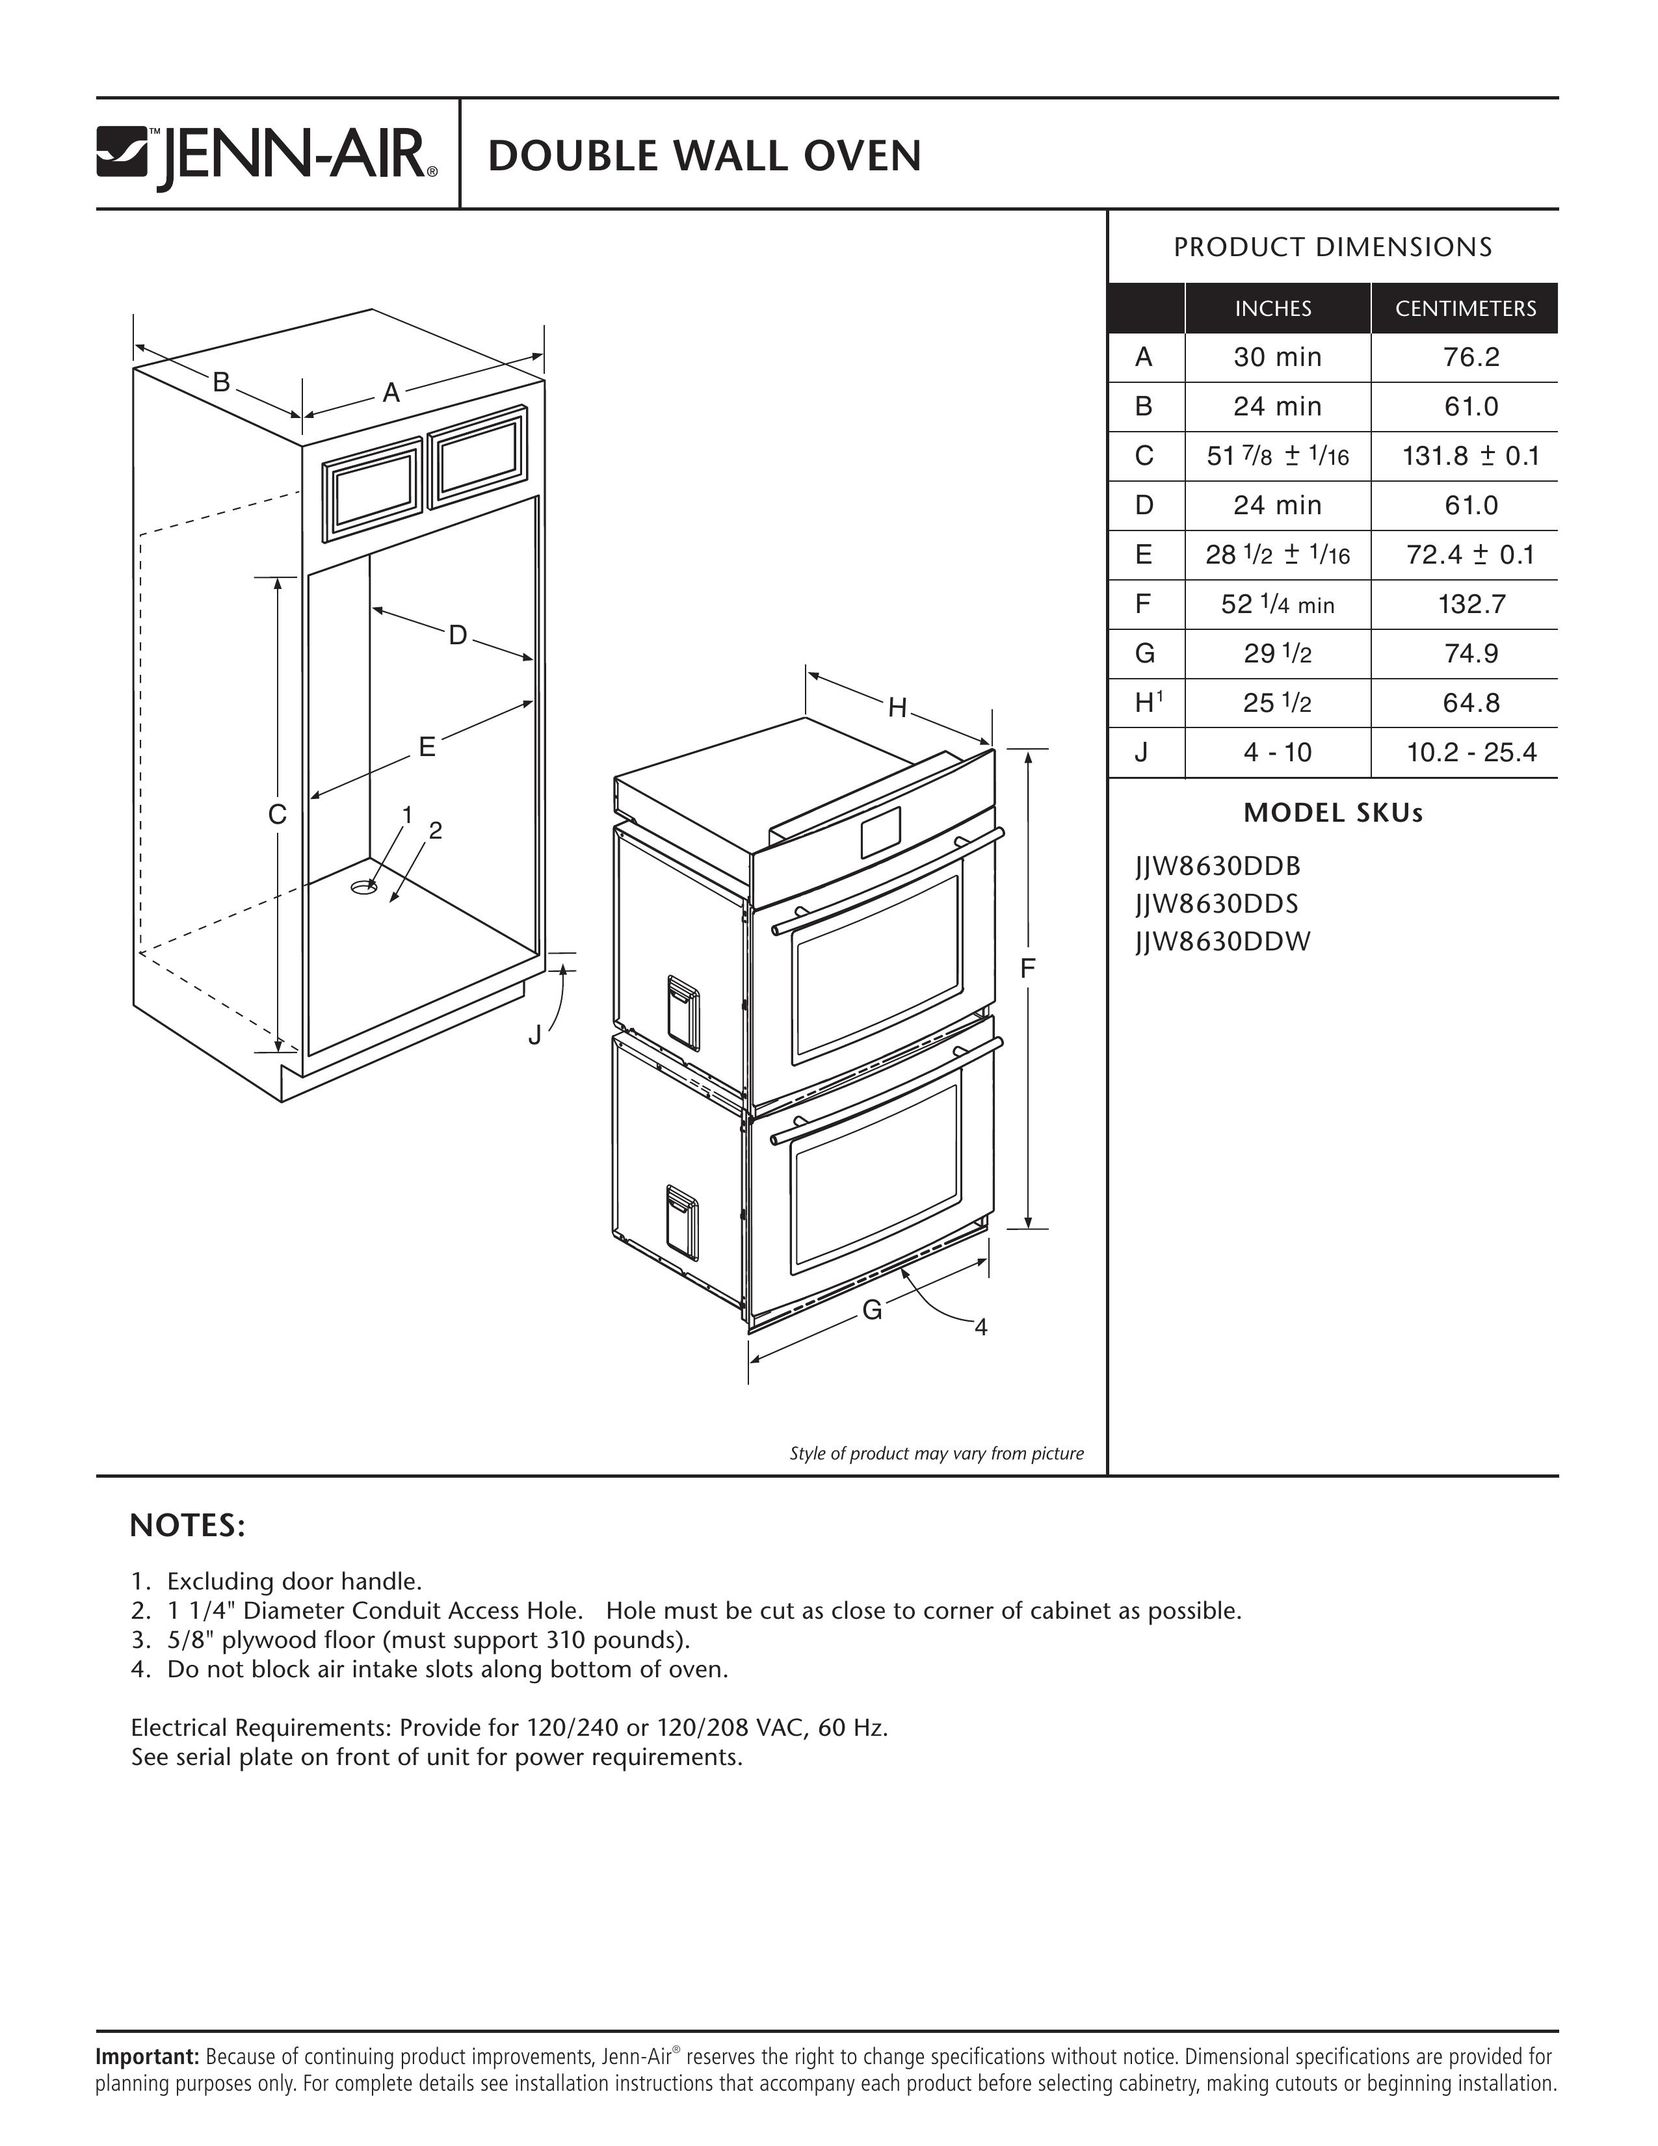 Jenn-Air JJW8630DDS Oven User Manual